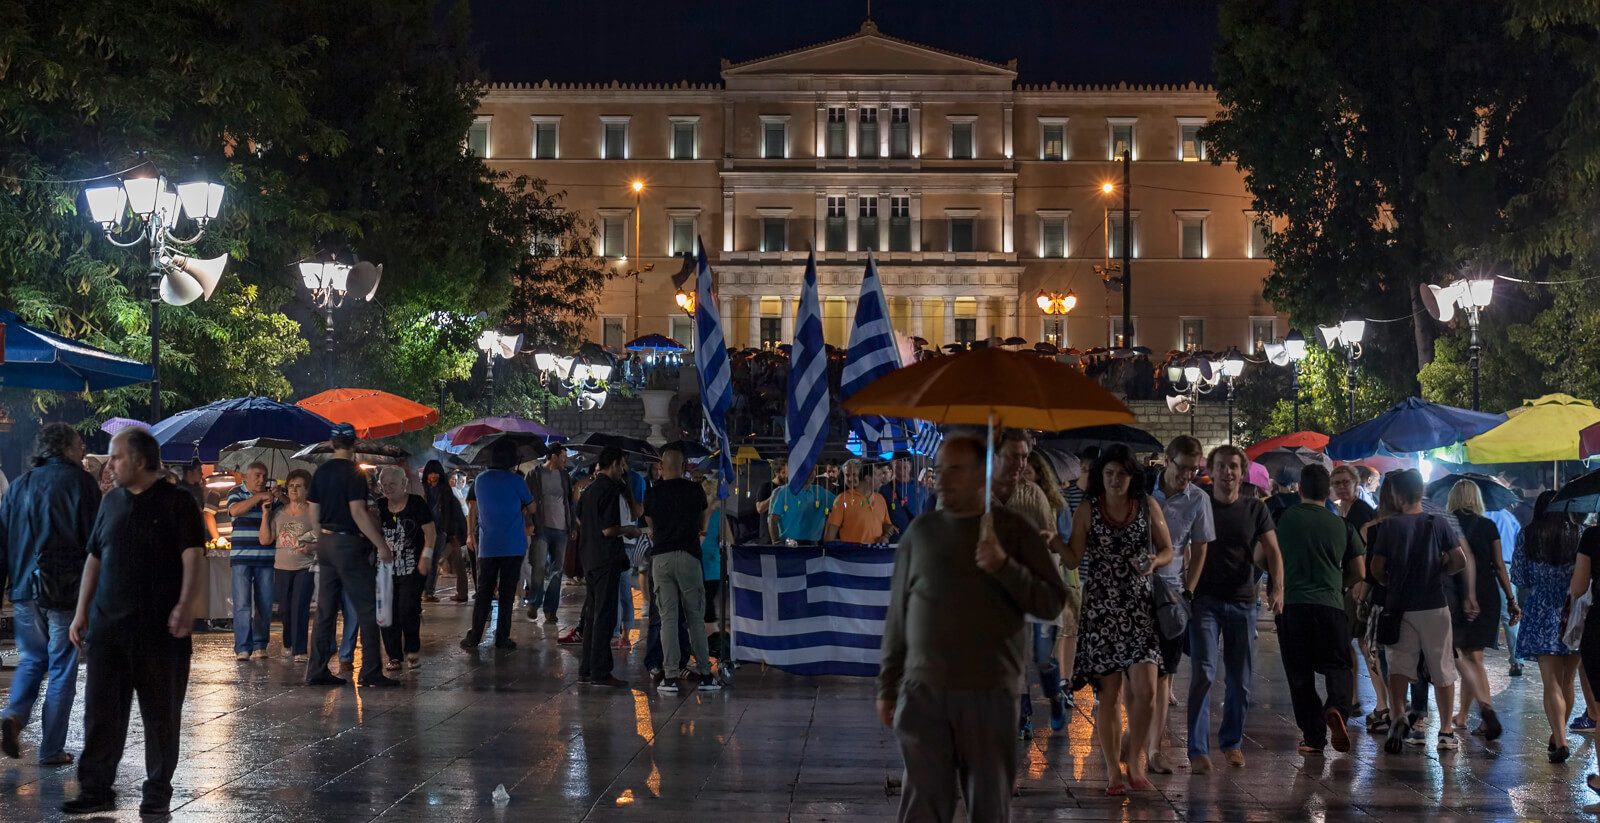 Ποιοι είναι οι Έλληνες σήμερα; Η νέα έρευνα της διαΝΕΟσις αποκαλύπτει αλήθειες που φανταζόμασταν, στοιχεία που μαντεύαμε αλλά και κάποια εντυπωσιακά, αναπάντεχα ευρήματα.